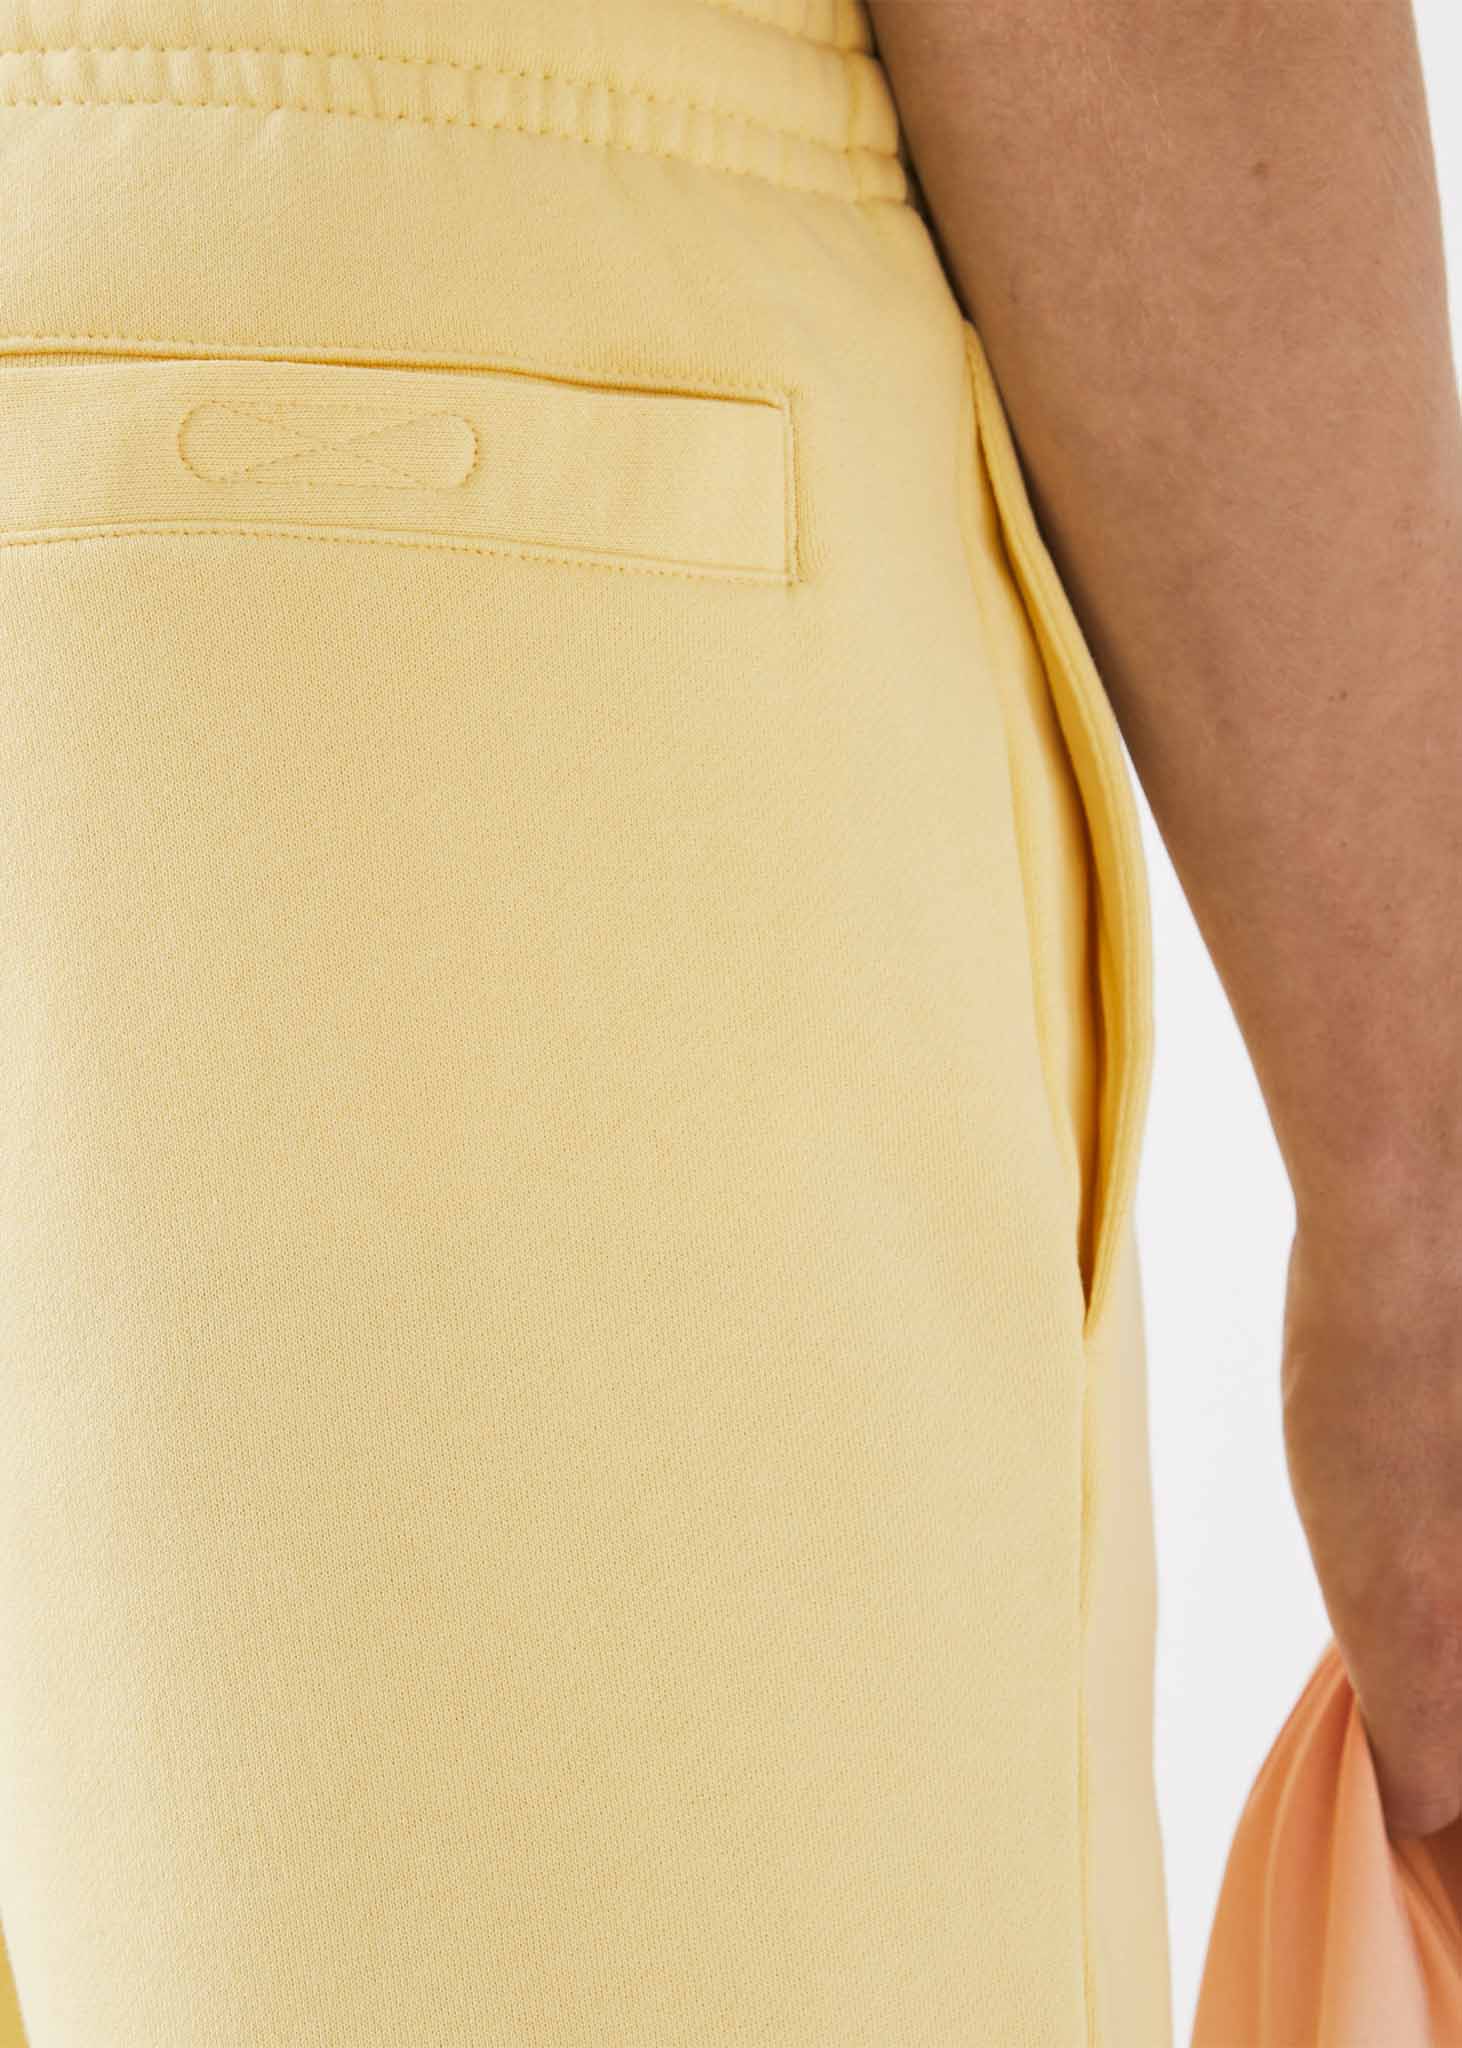 Lacoste Korte Broeken  Shorts - napolitan yellow 